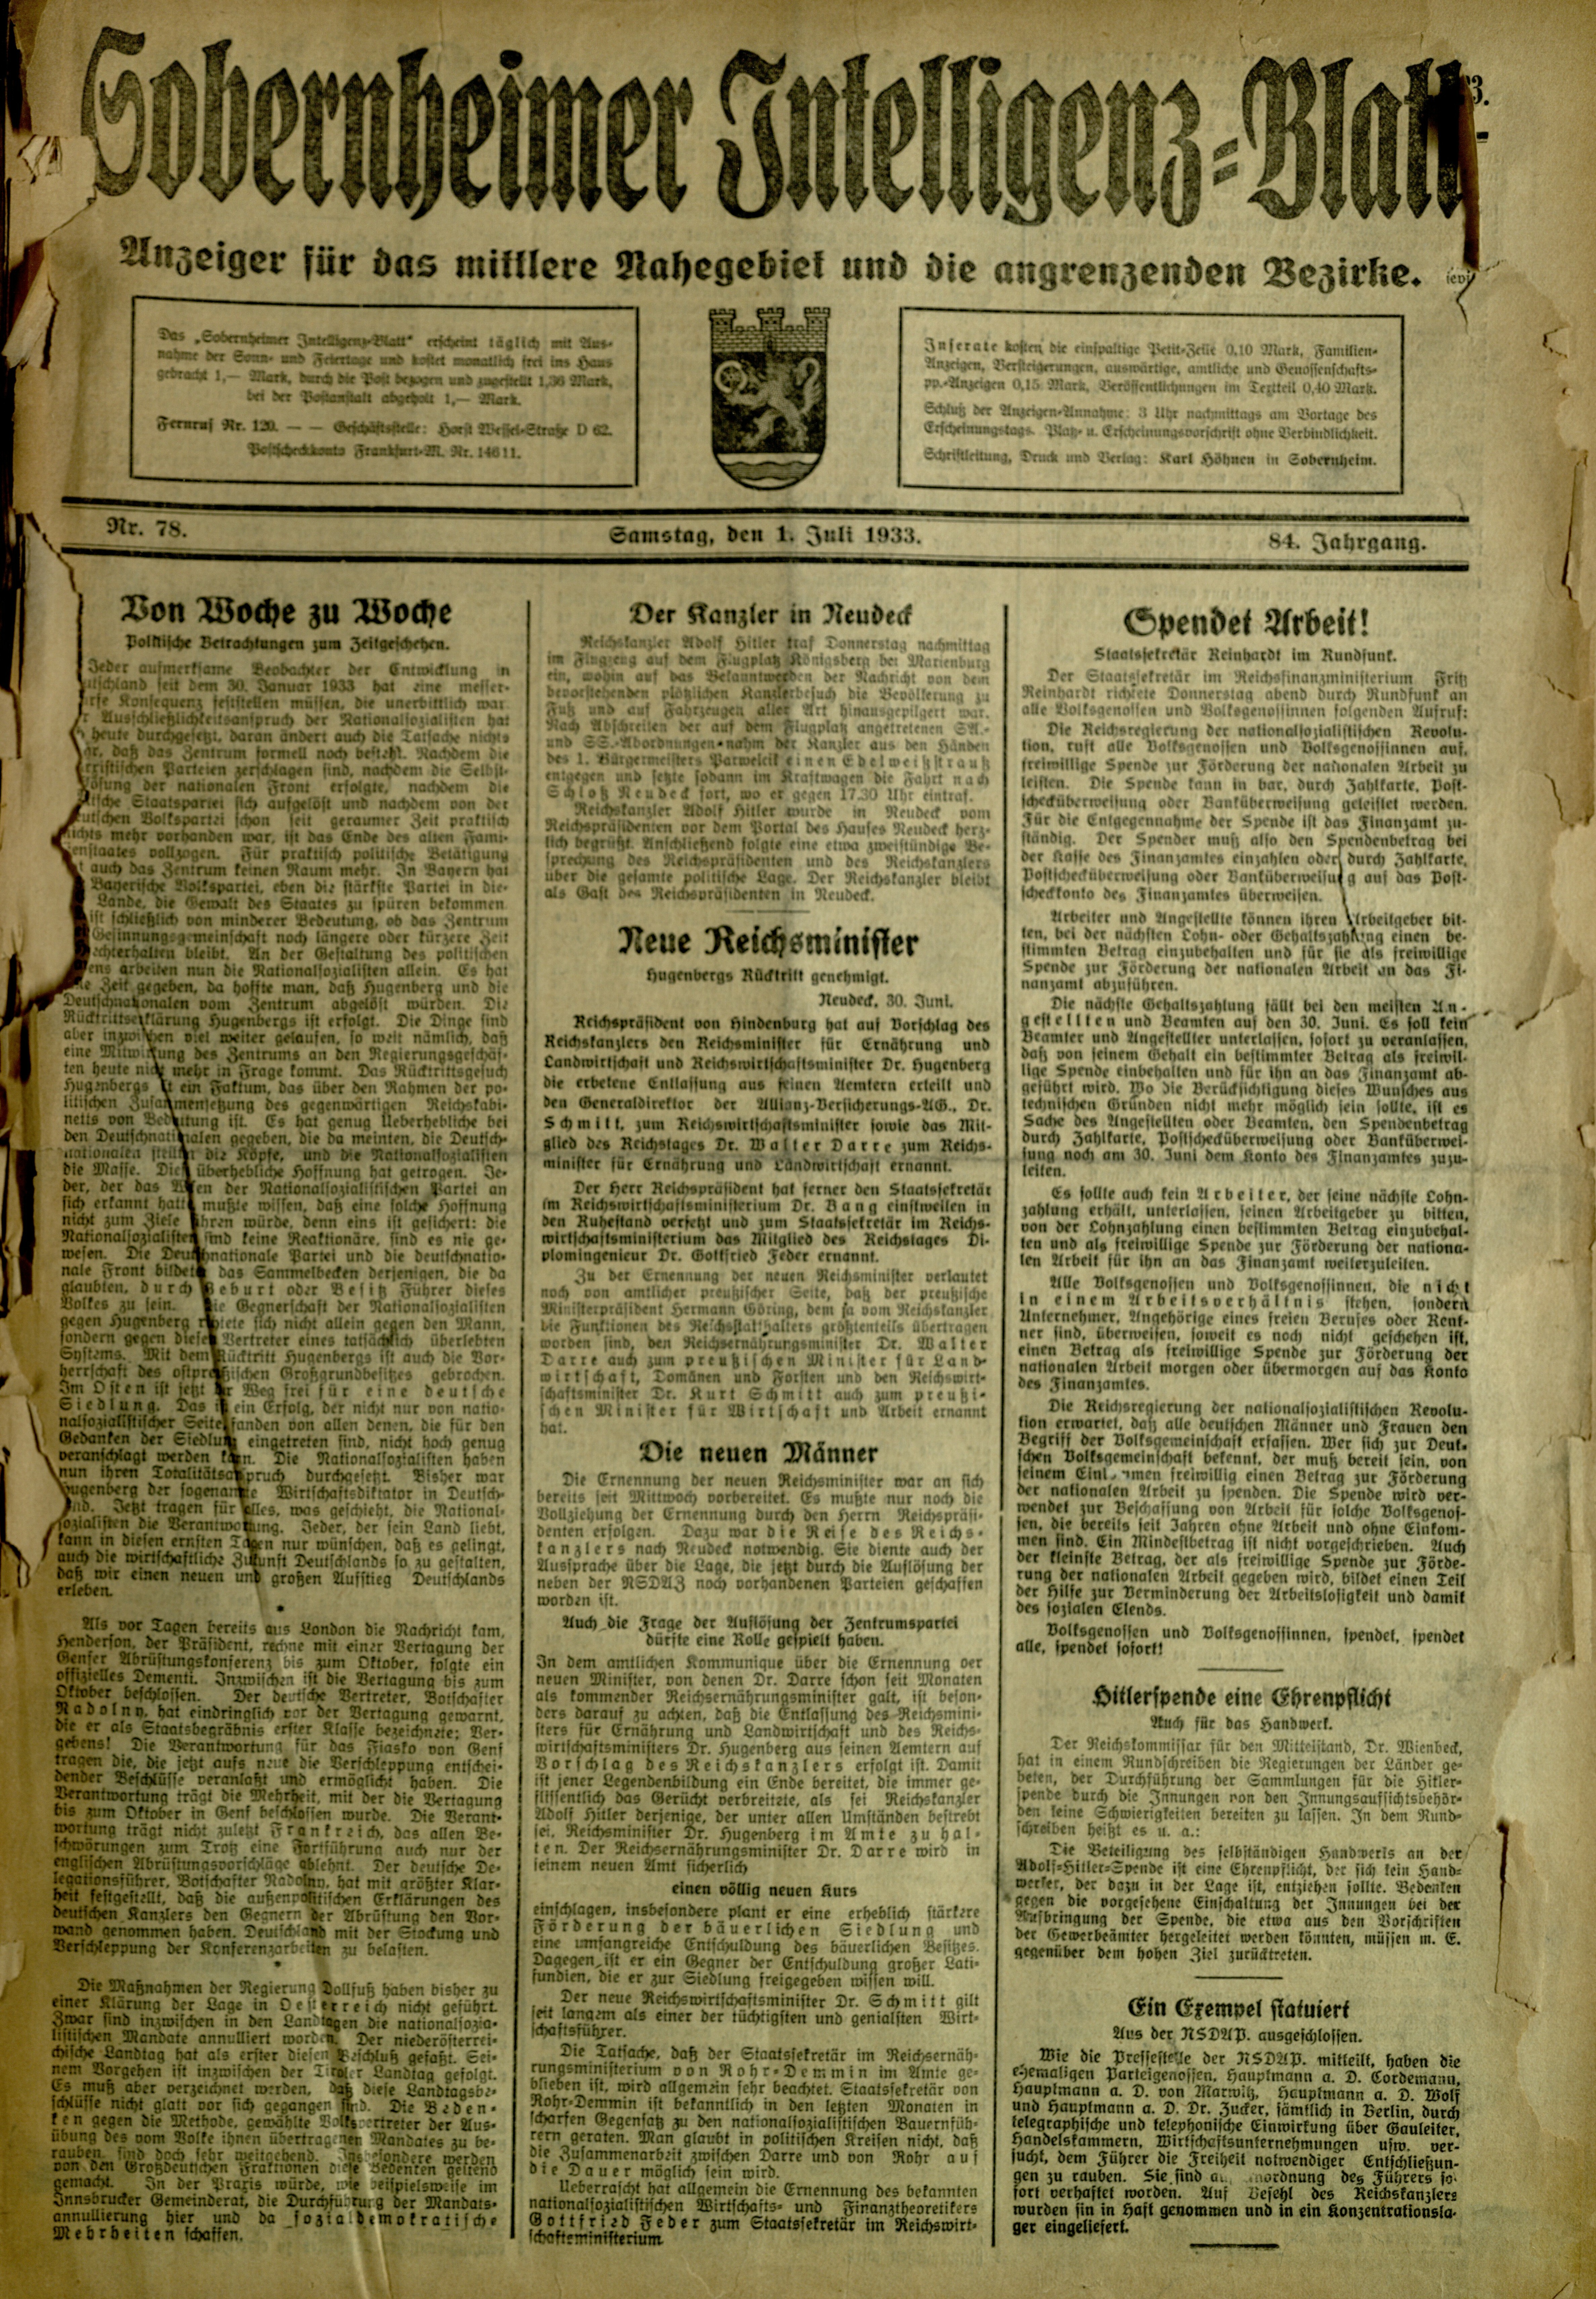 Zeitung: Sobernheimer Intelligenzblatt; Juli 1933, Jg. 84 Nr. 78 (Heimatmuseum Bad Sobernheim CC BY-NC-SA)